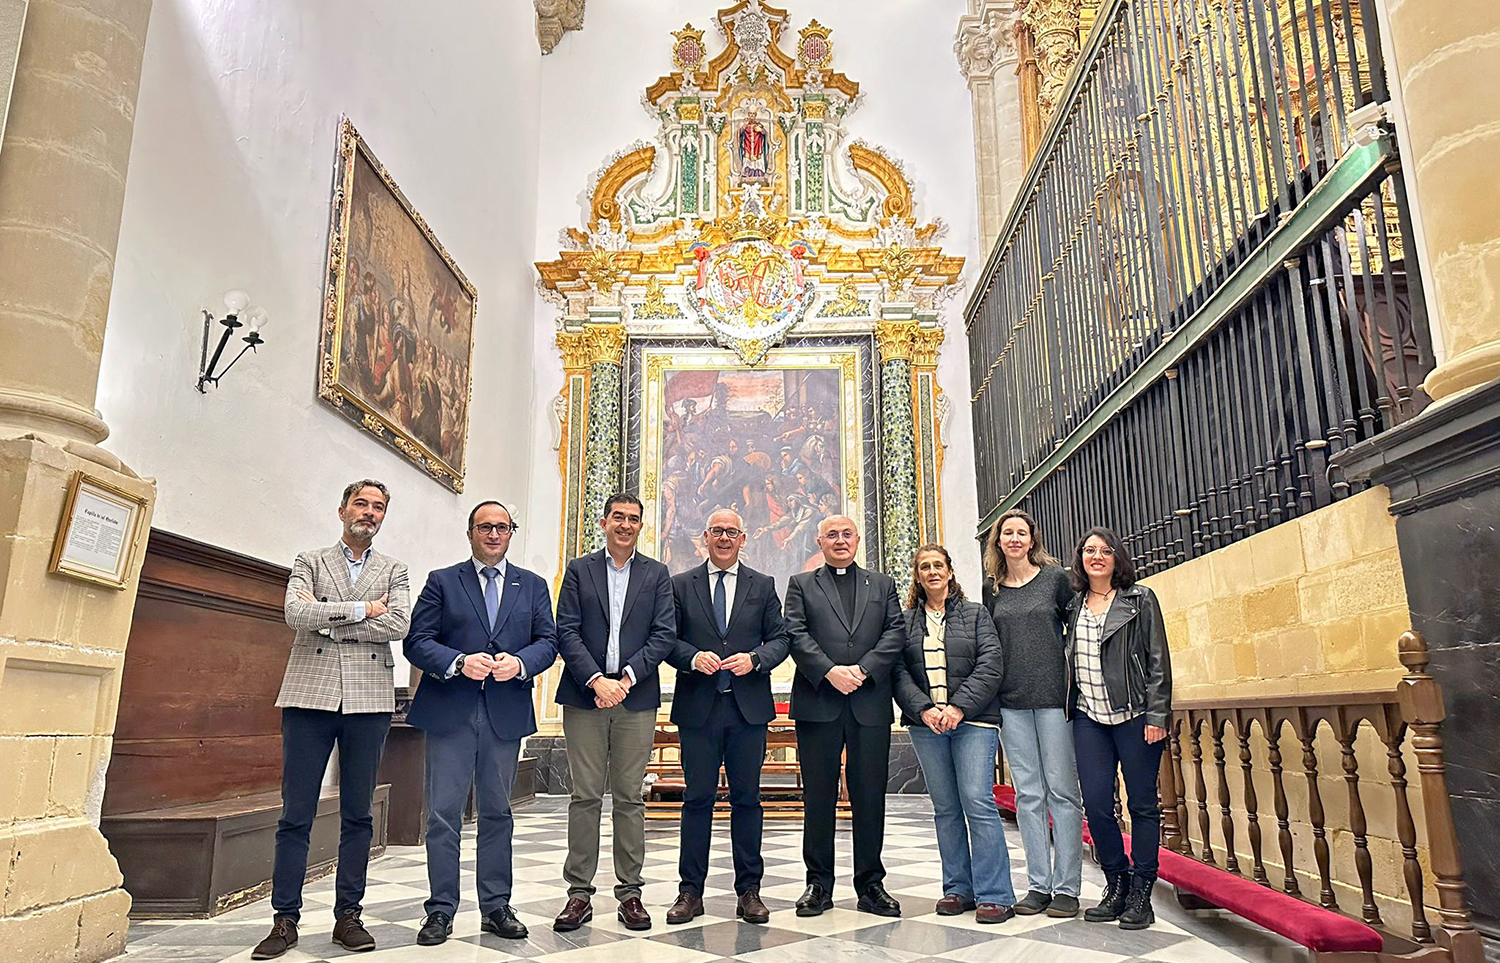 El delegado del Gobierno andaluz, Jesús Estrella, destaca el impulso a la Semana Santa jienense a través de las ayudas al arte sacro